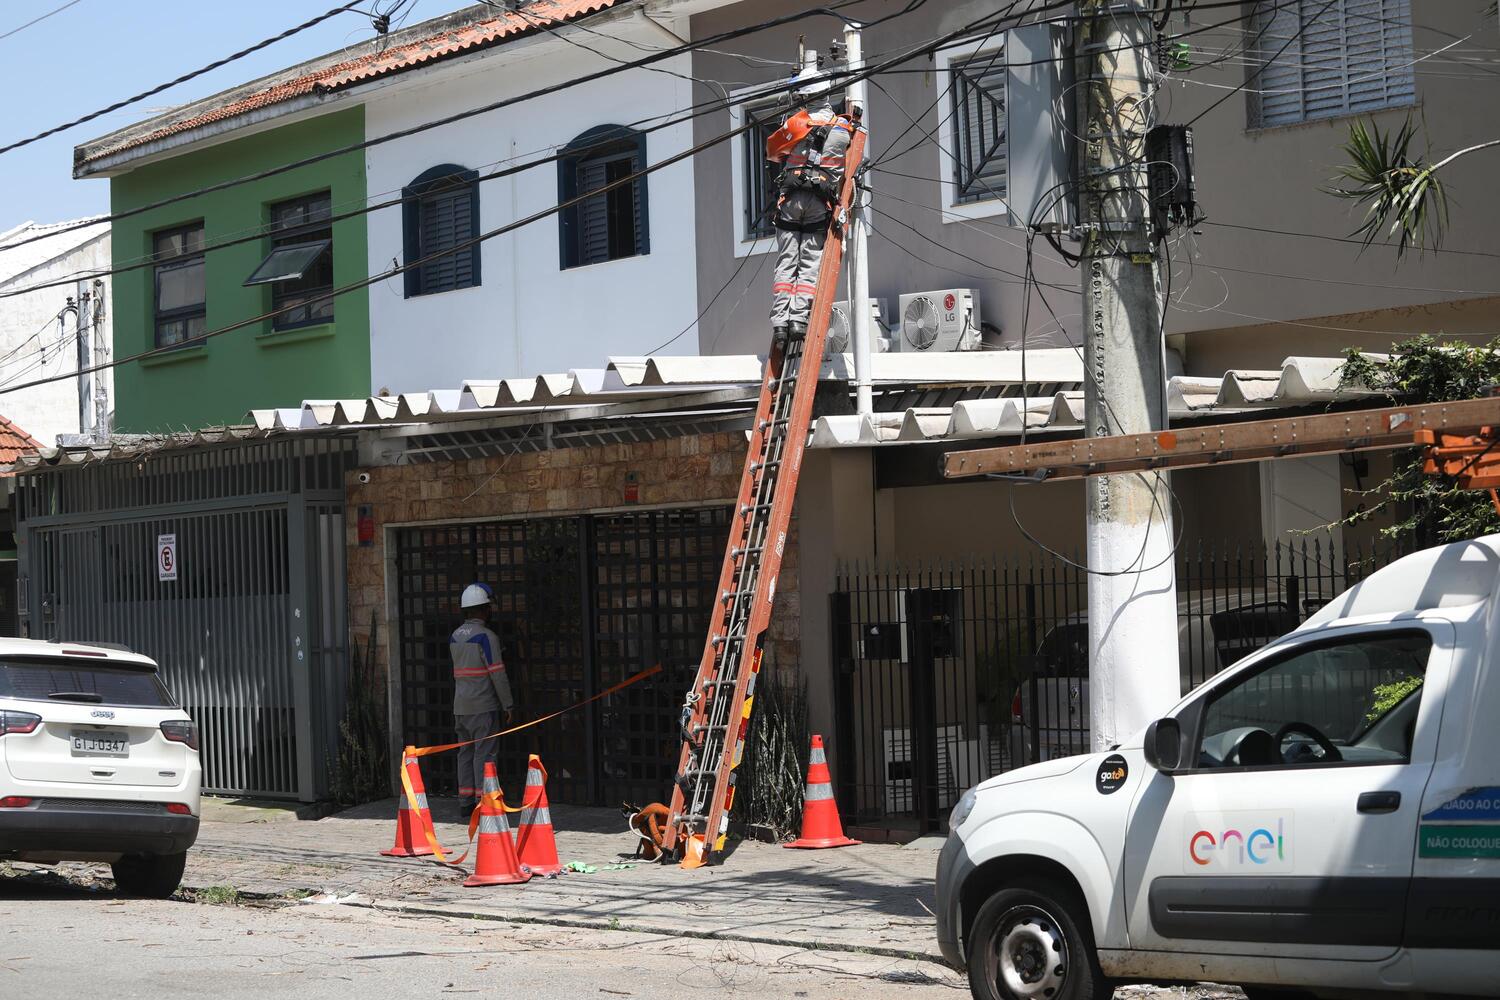 Enel adota atendimento agendado como solução para filas em SP - Notícias -  R7 São Paulo